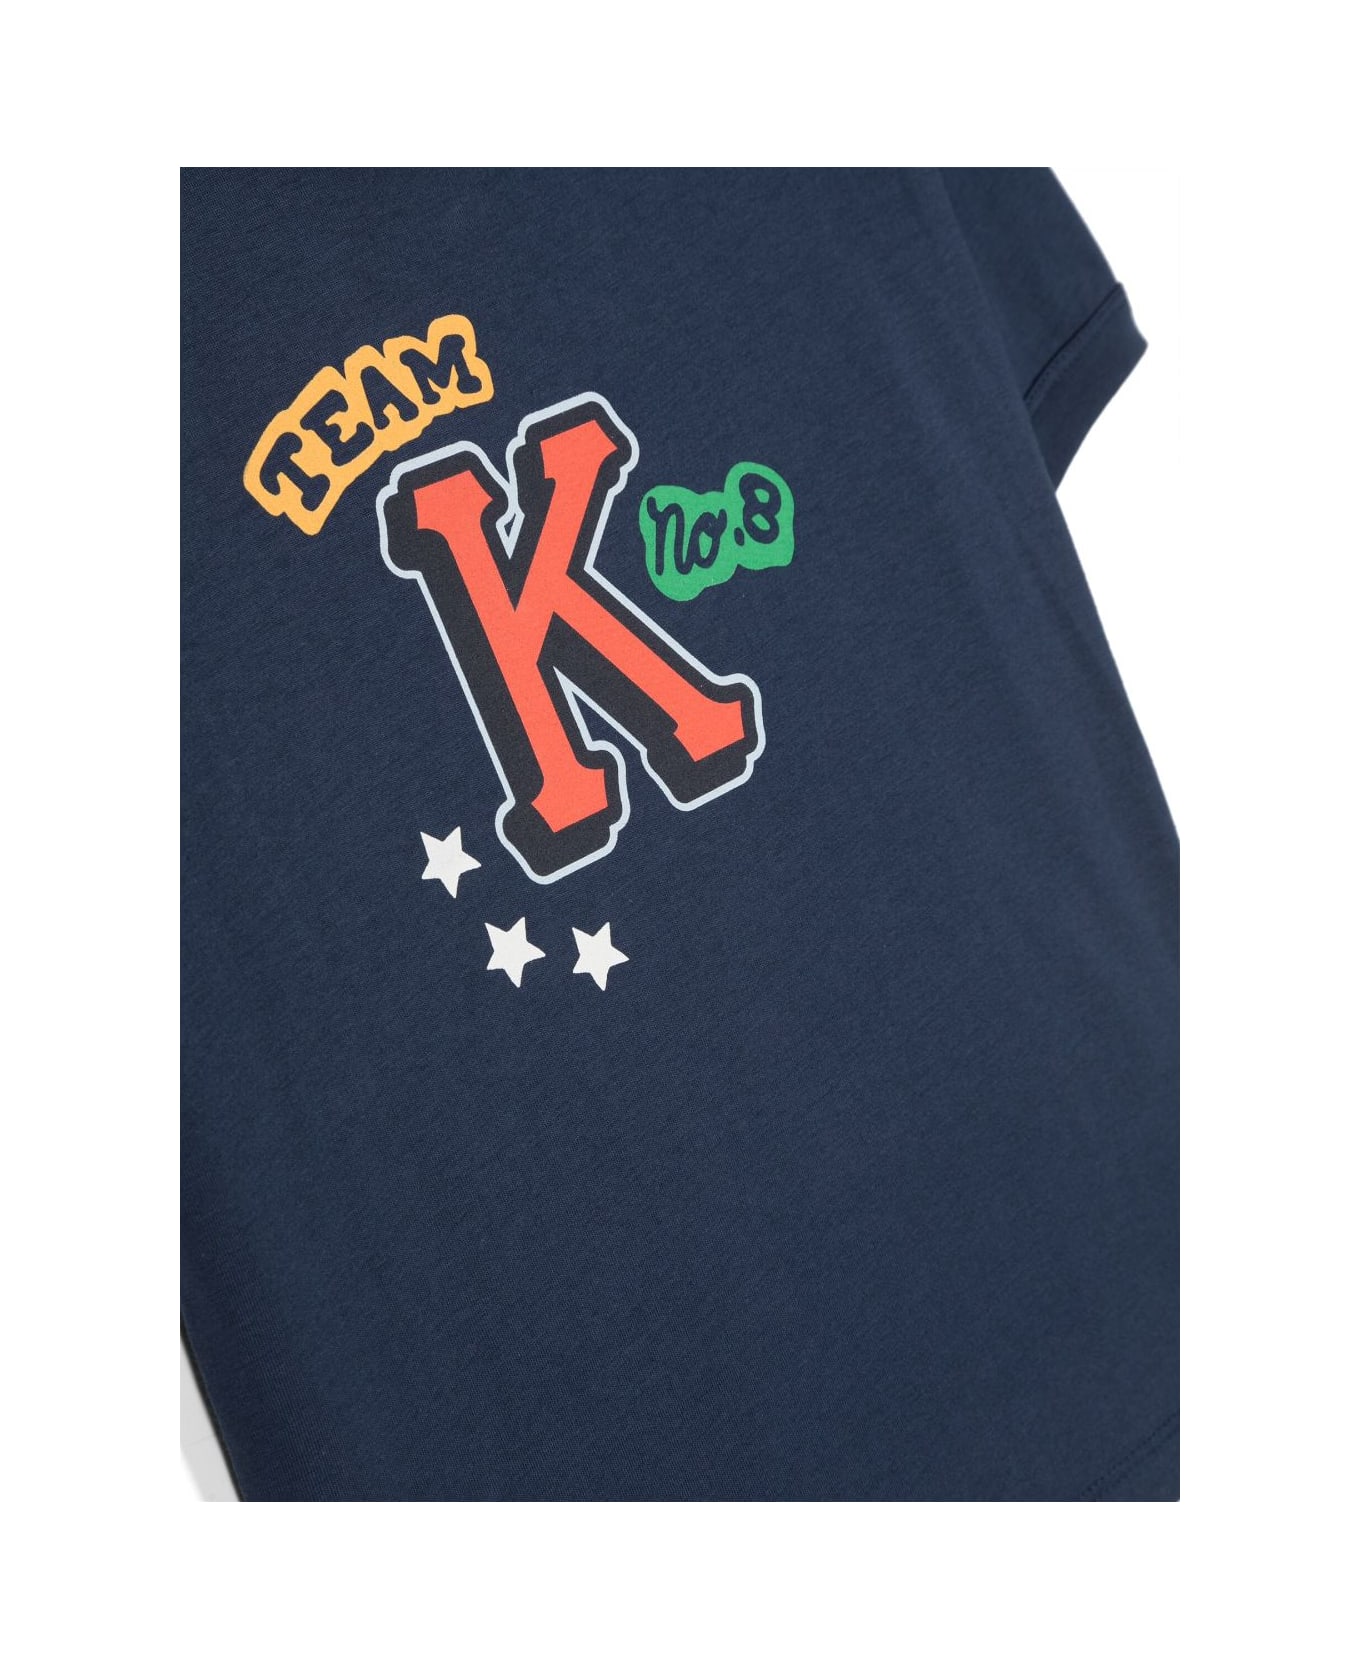 Kenzo Kids Kenzo T-shirt Blu In Jersey Di Cotone Bambino - Blu Tシャツ＆ポロシャツ